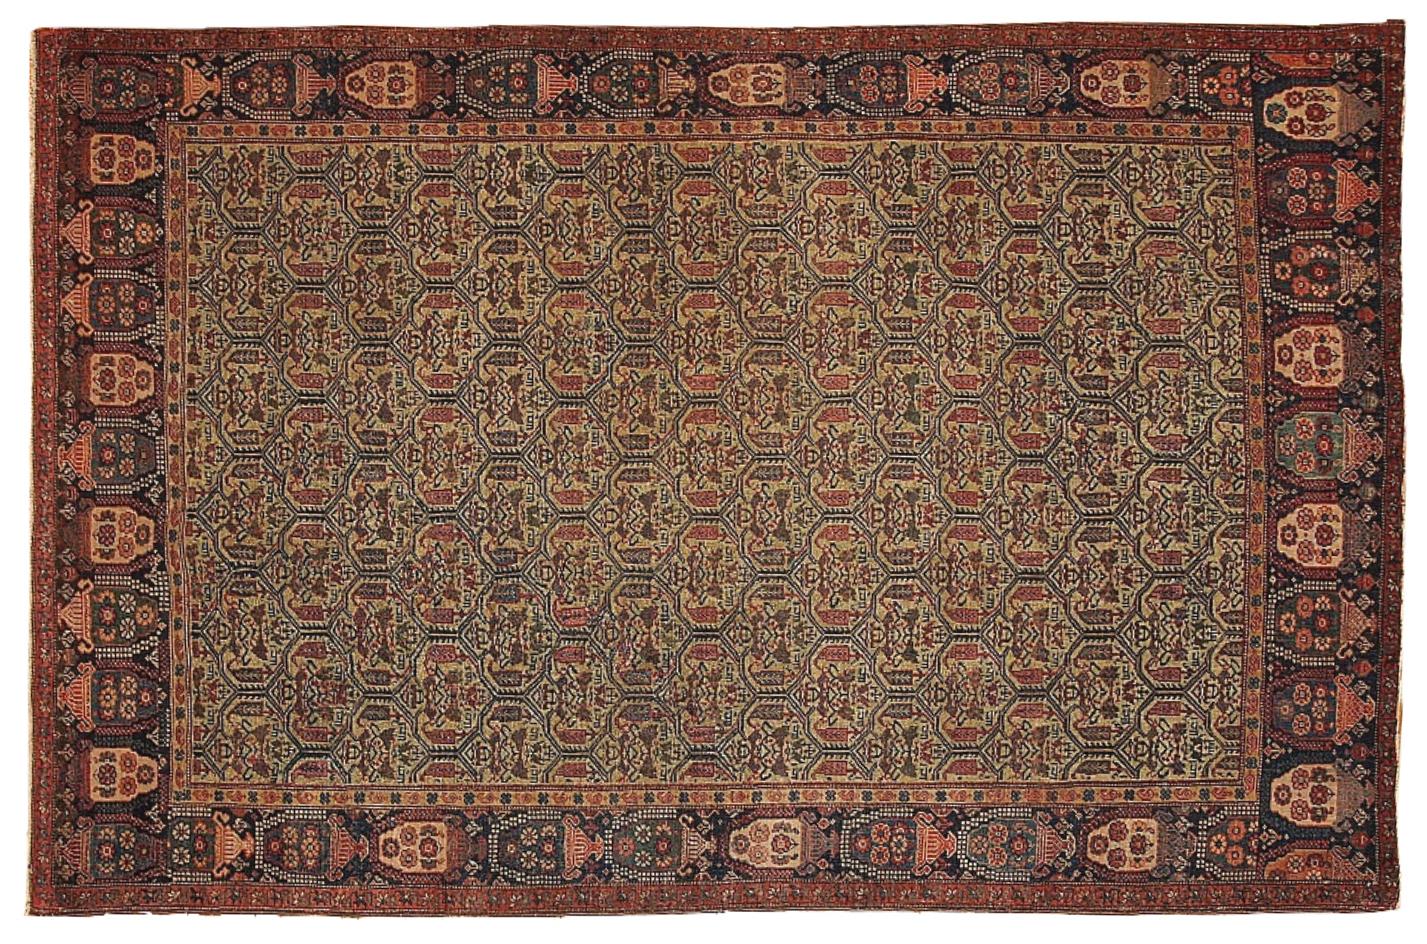 Feiner handgefertigter antiker Farahan-Teppich. Seegrüne Farben und eine detaillierte Gartengestaltung erinnern an das prächtige 19. Jahrhundert.

 